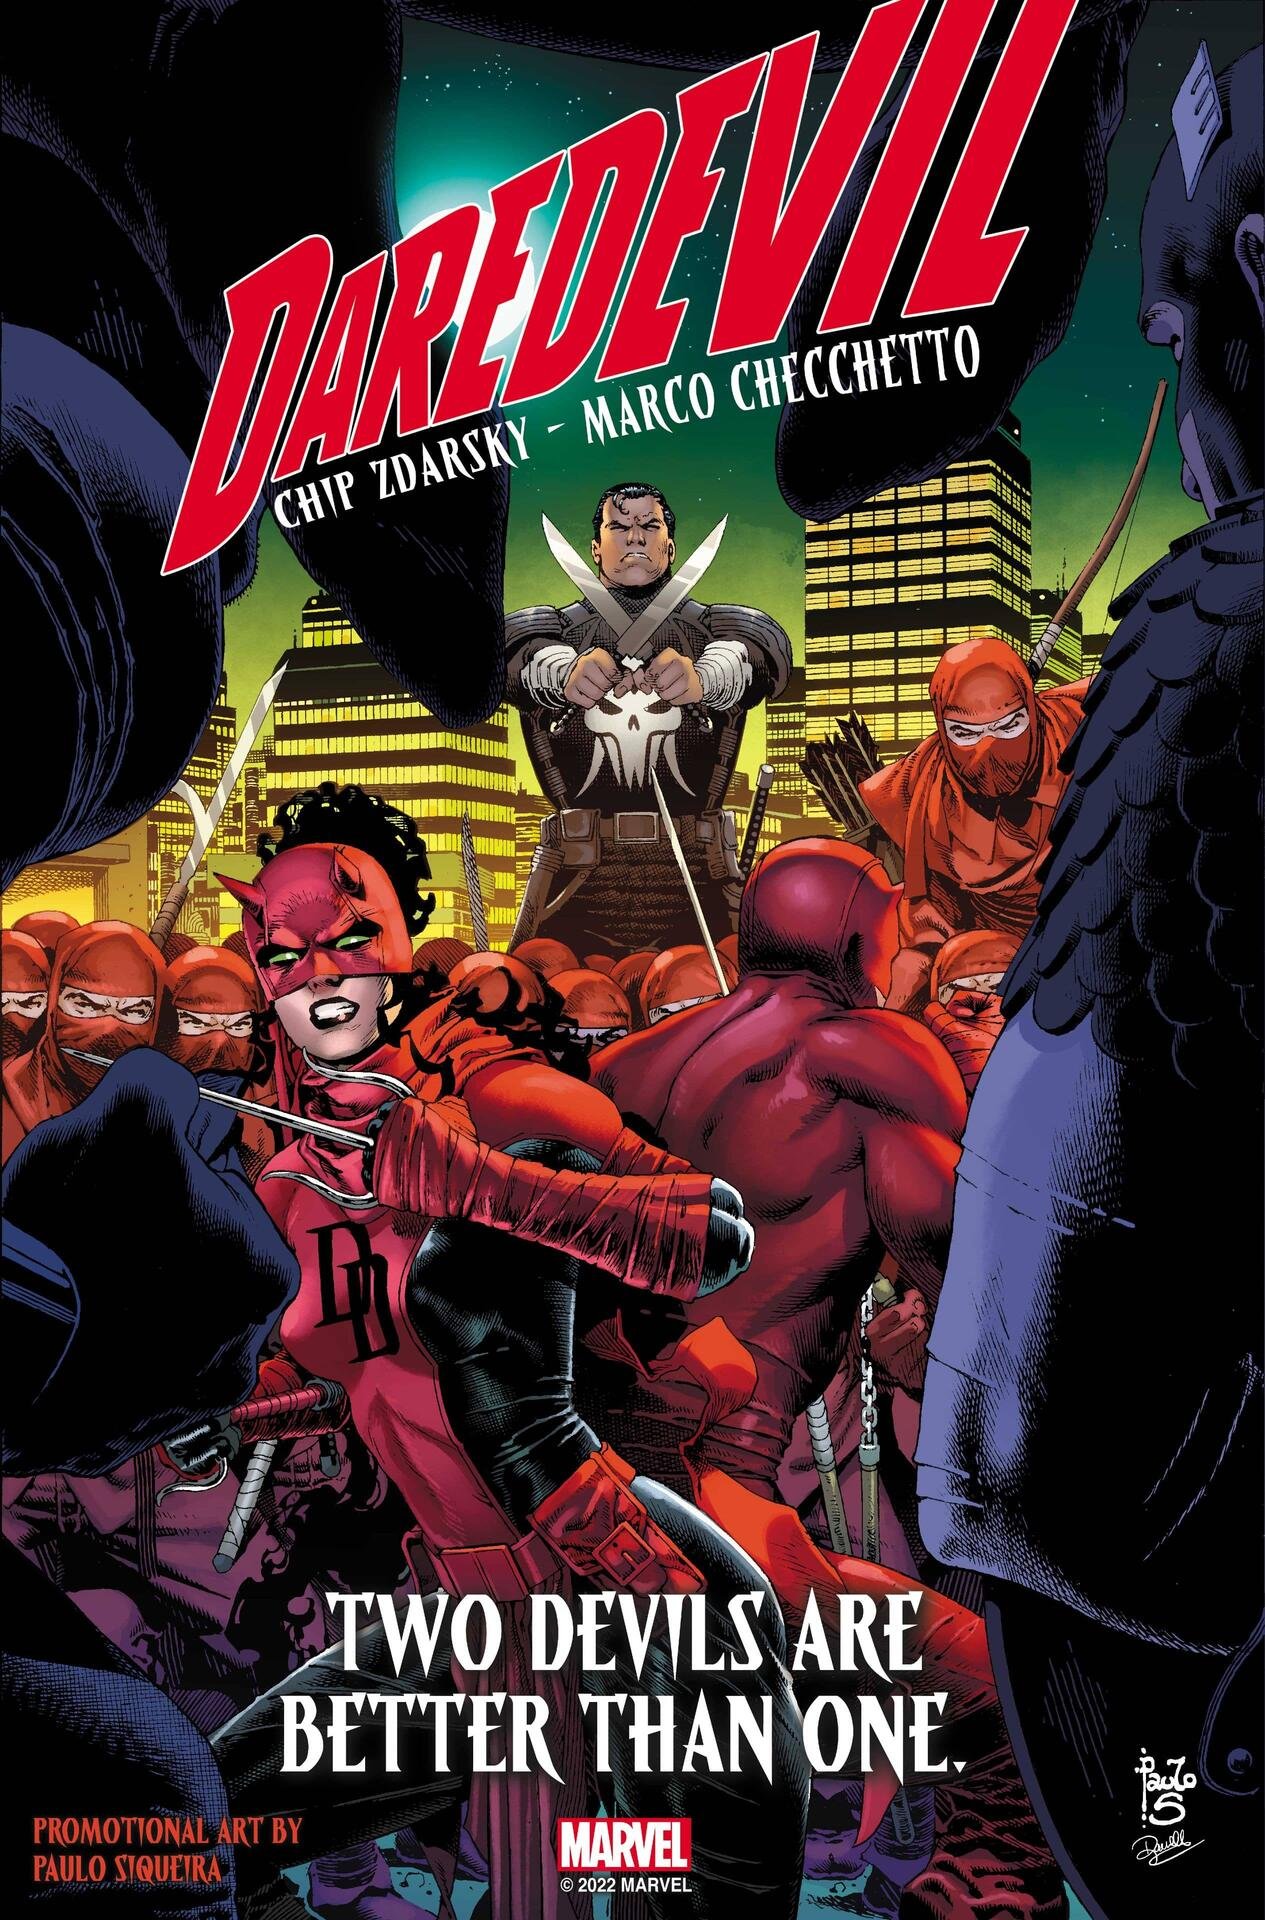 Immagine promozionale di Paulo Siqueira (e variant cover di Daredevil 3) con i due eroi contro Punisher e la Mano